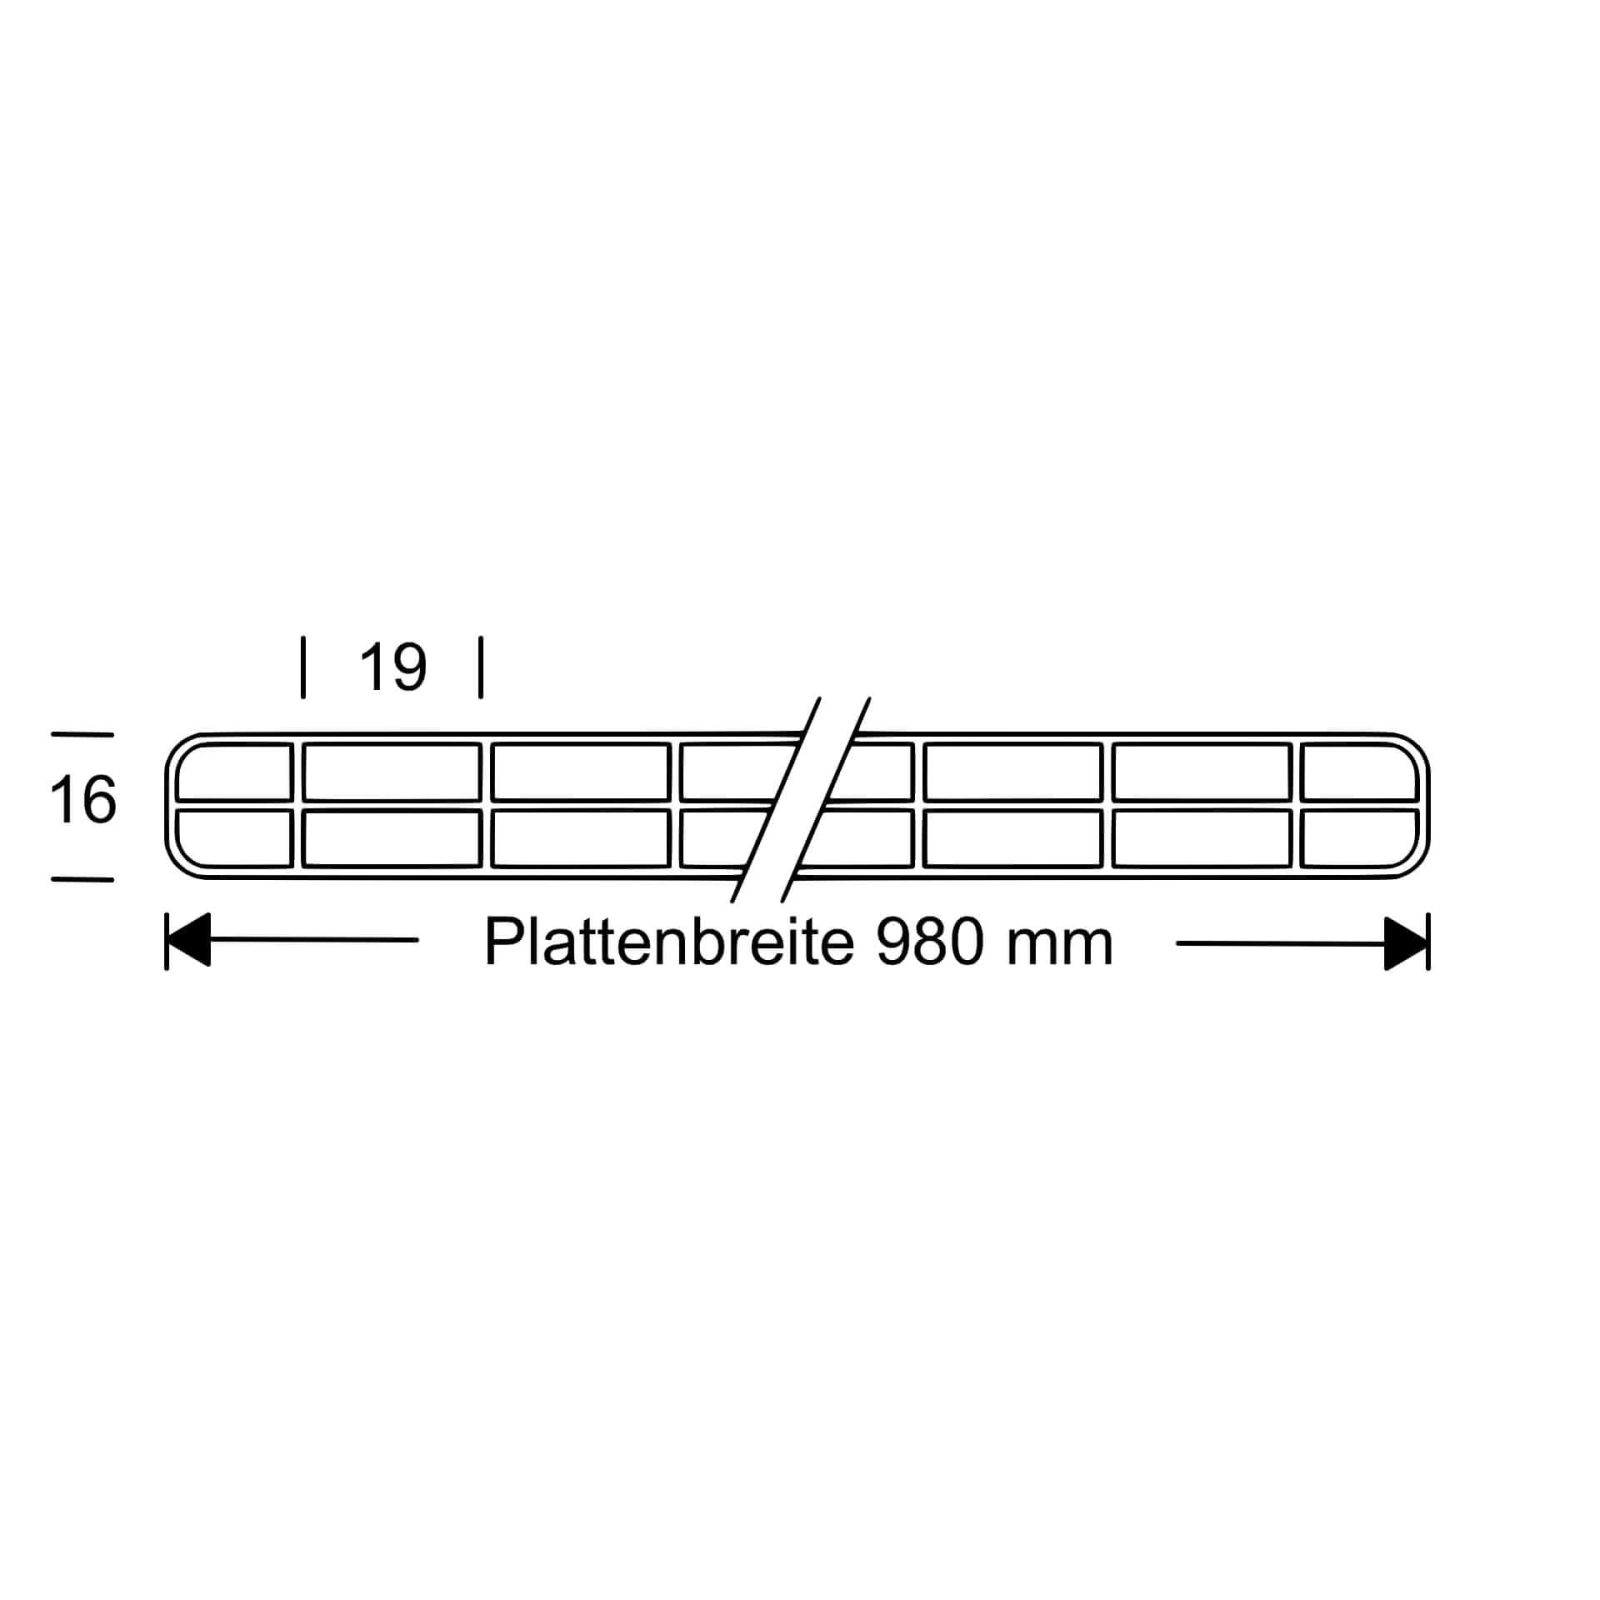 Polycarbonat Stegplatte | 16 mm | Profil DUO | Sparpaket | Plattenbreite 980 mm | Klar | Novalite | Breite 3,09 m | Länge 2,00 m #10